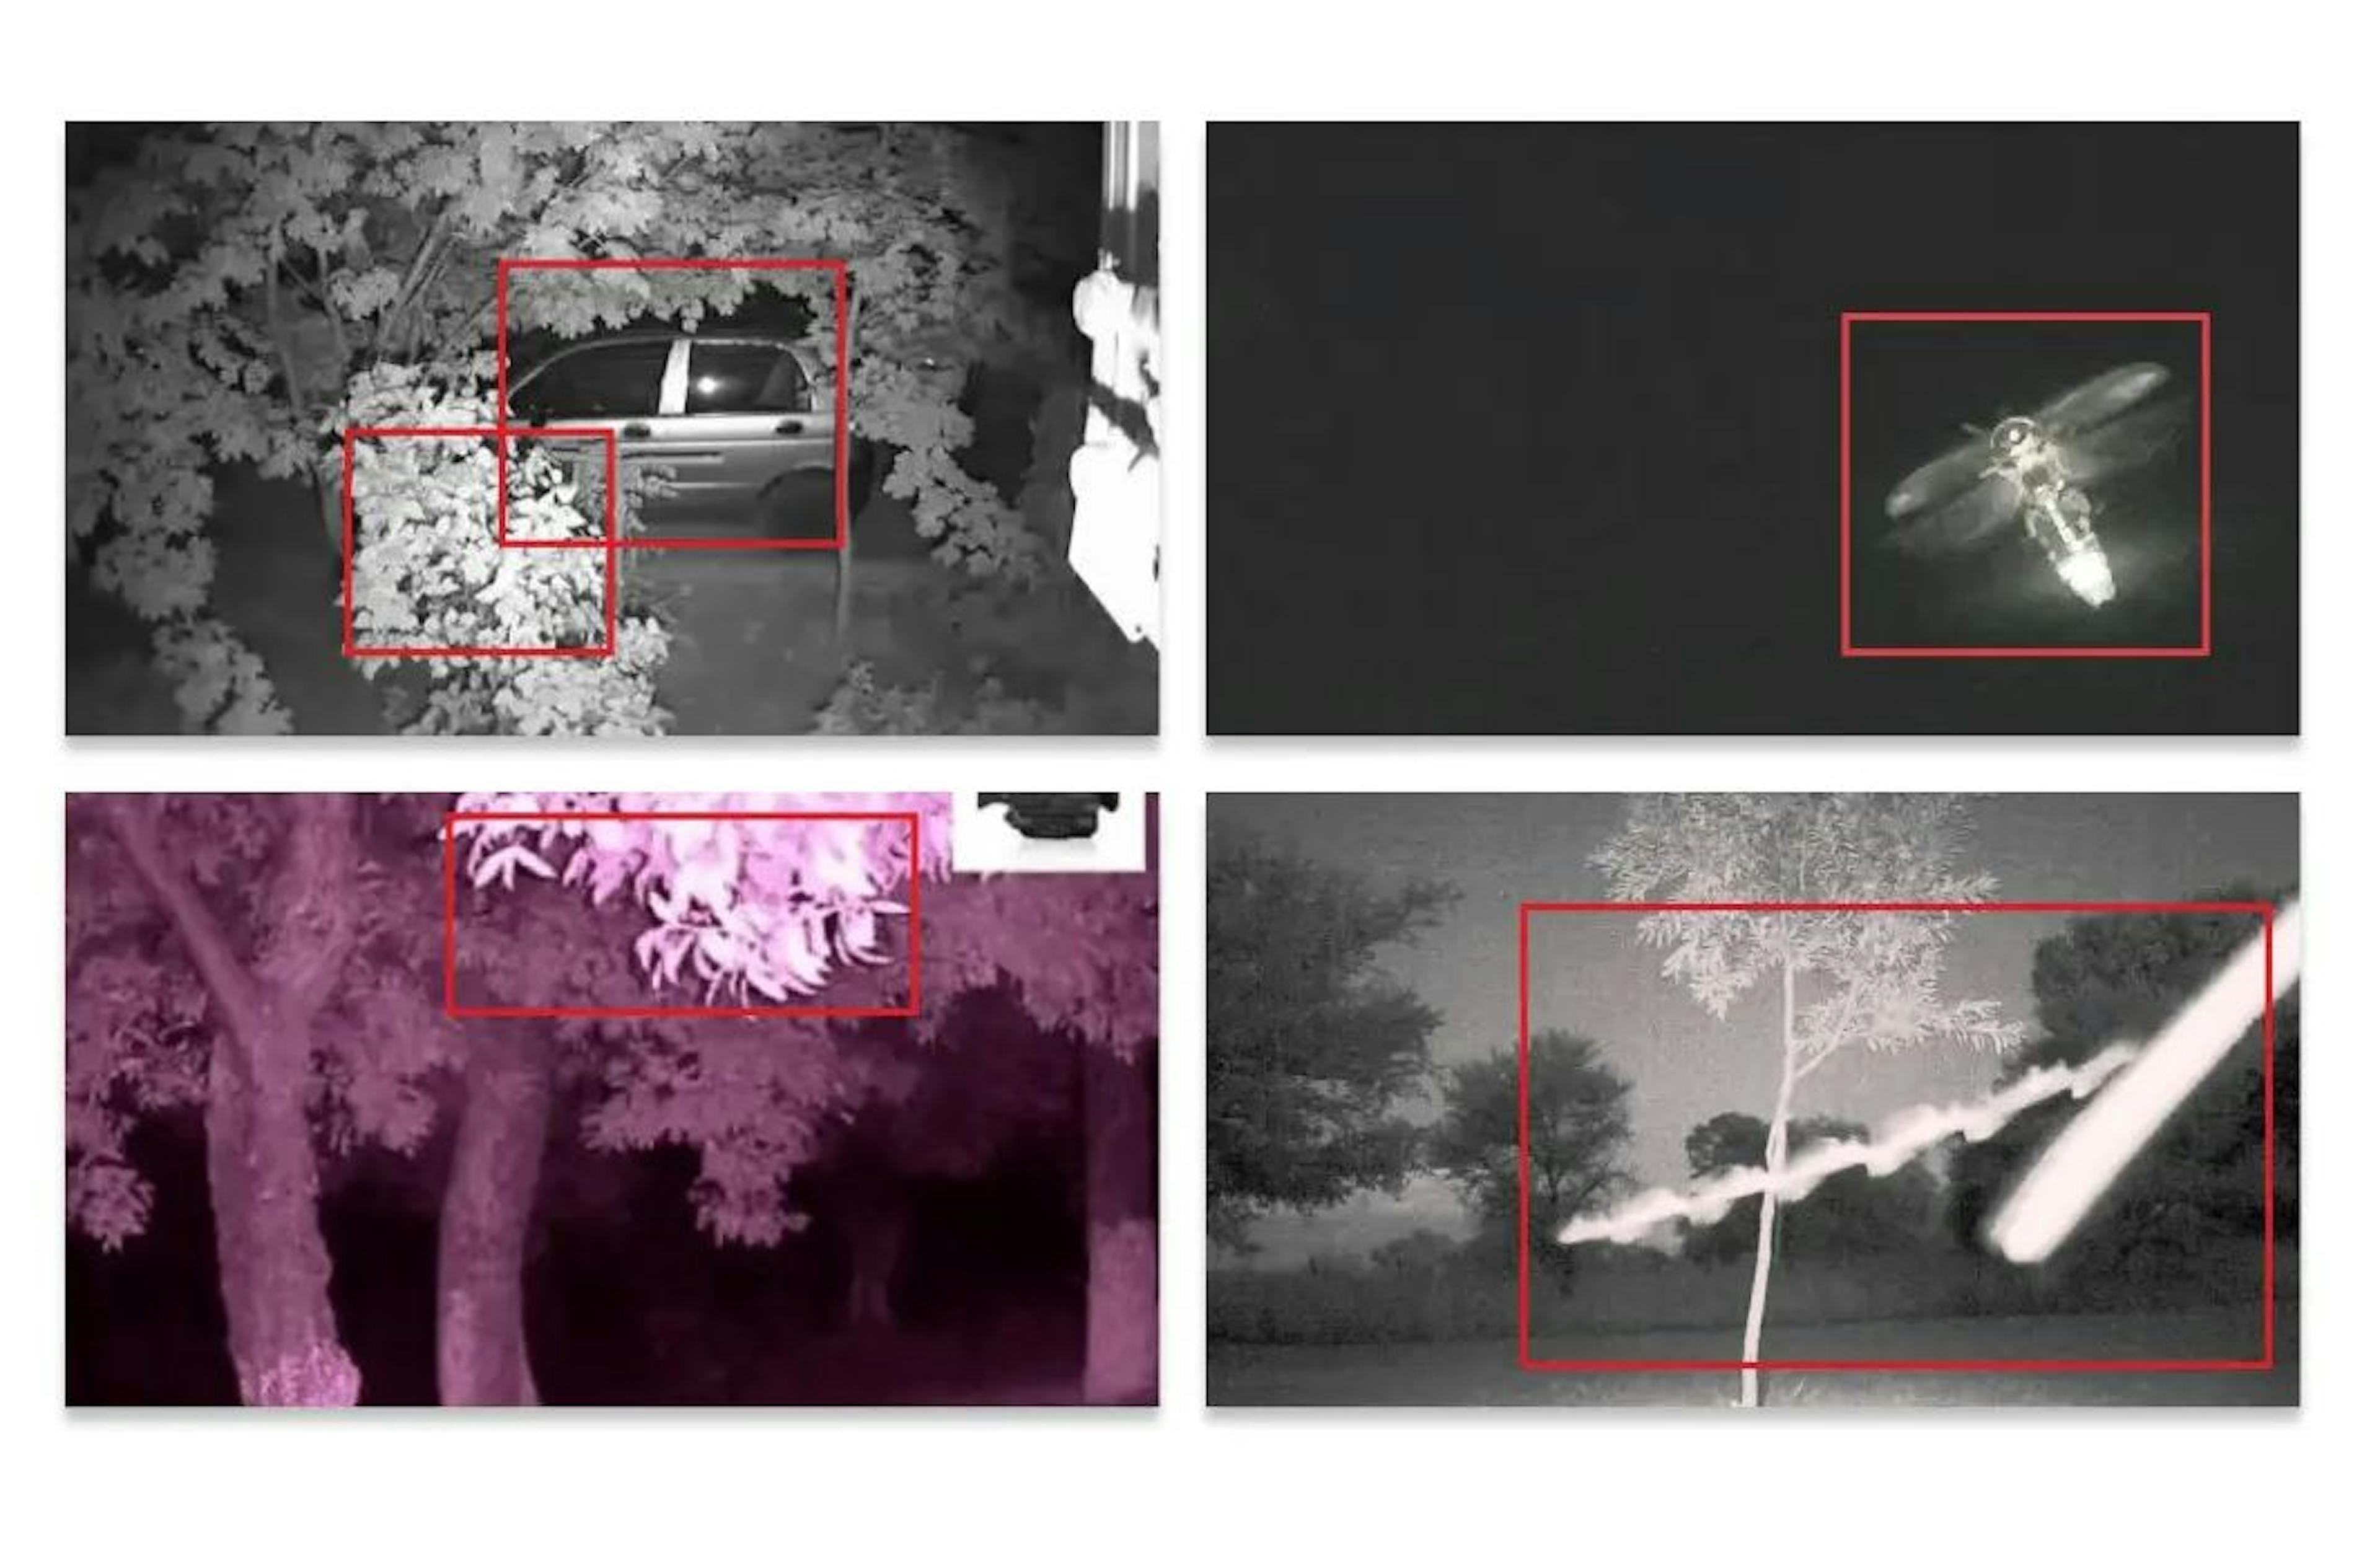 Gece boyunca model, kuş olarak mobbing yapan ağaç dallarını veya böcekleri tespit edecek